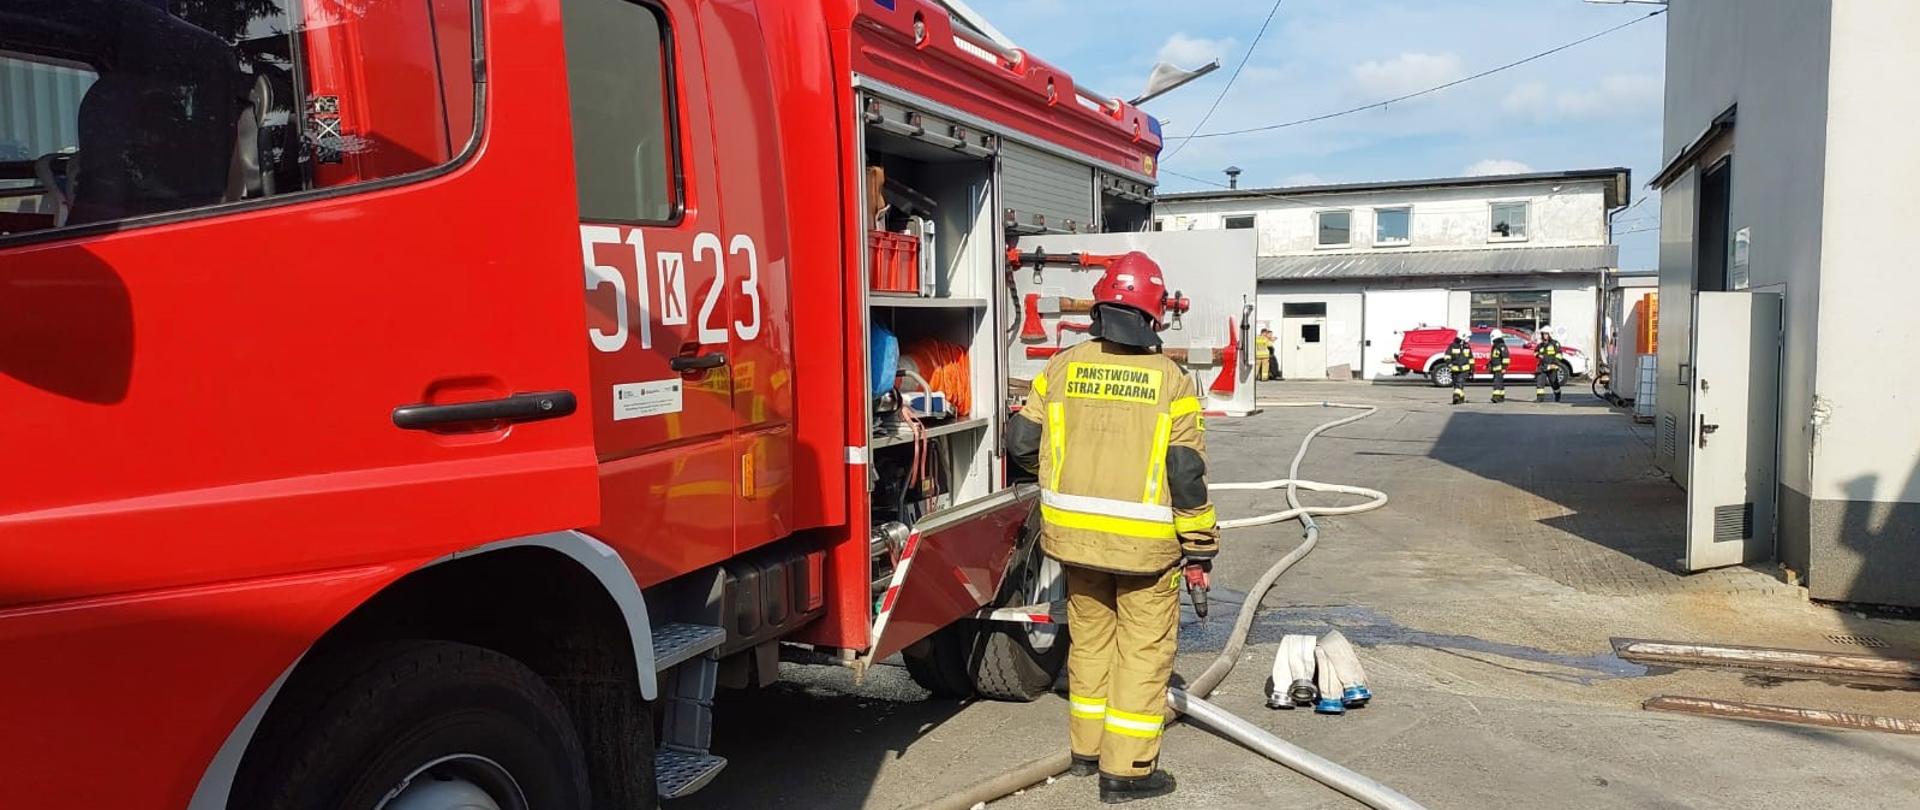 Zdjęcie przedstawia strażaka oraz samochód pożarniczy biorący udział w działaniach ratowniczo-gaśniczych. W centralnej części zdjęcia można zauważyć rozwinięte linie wężowe. 